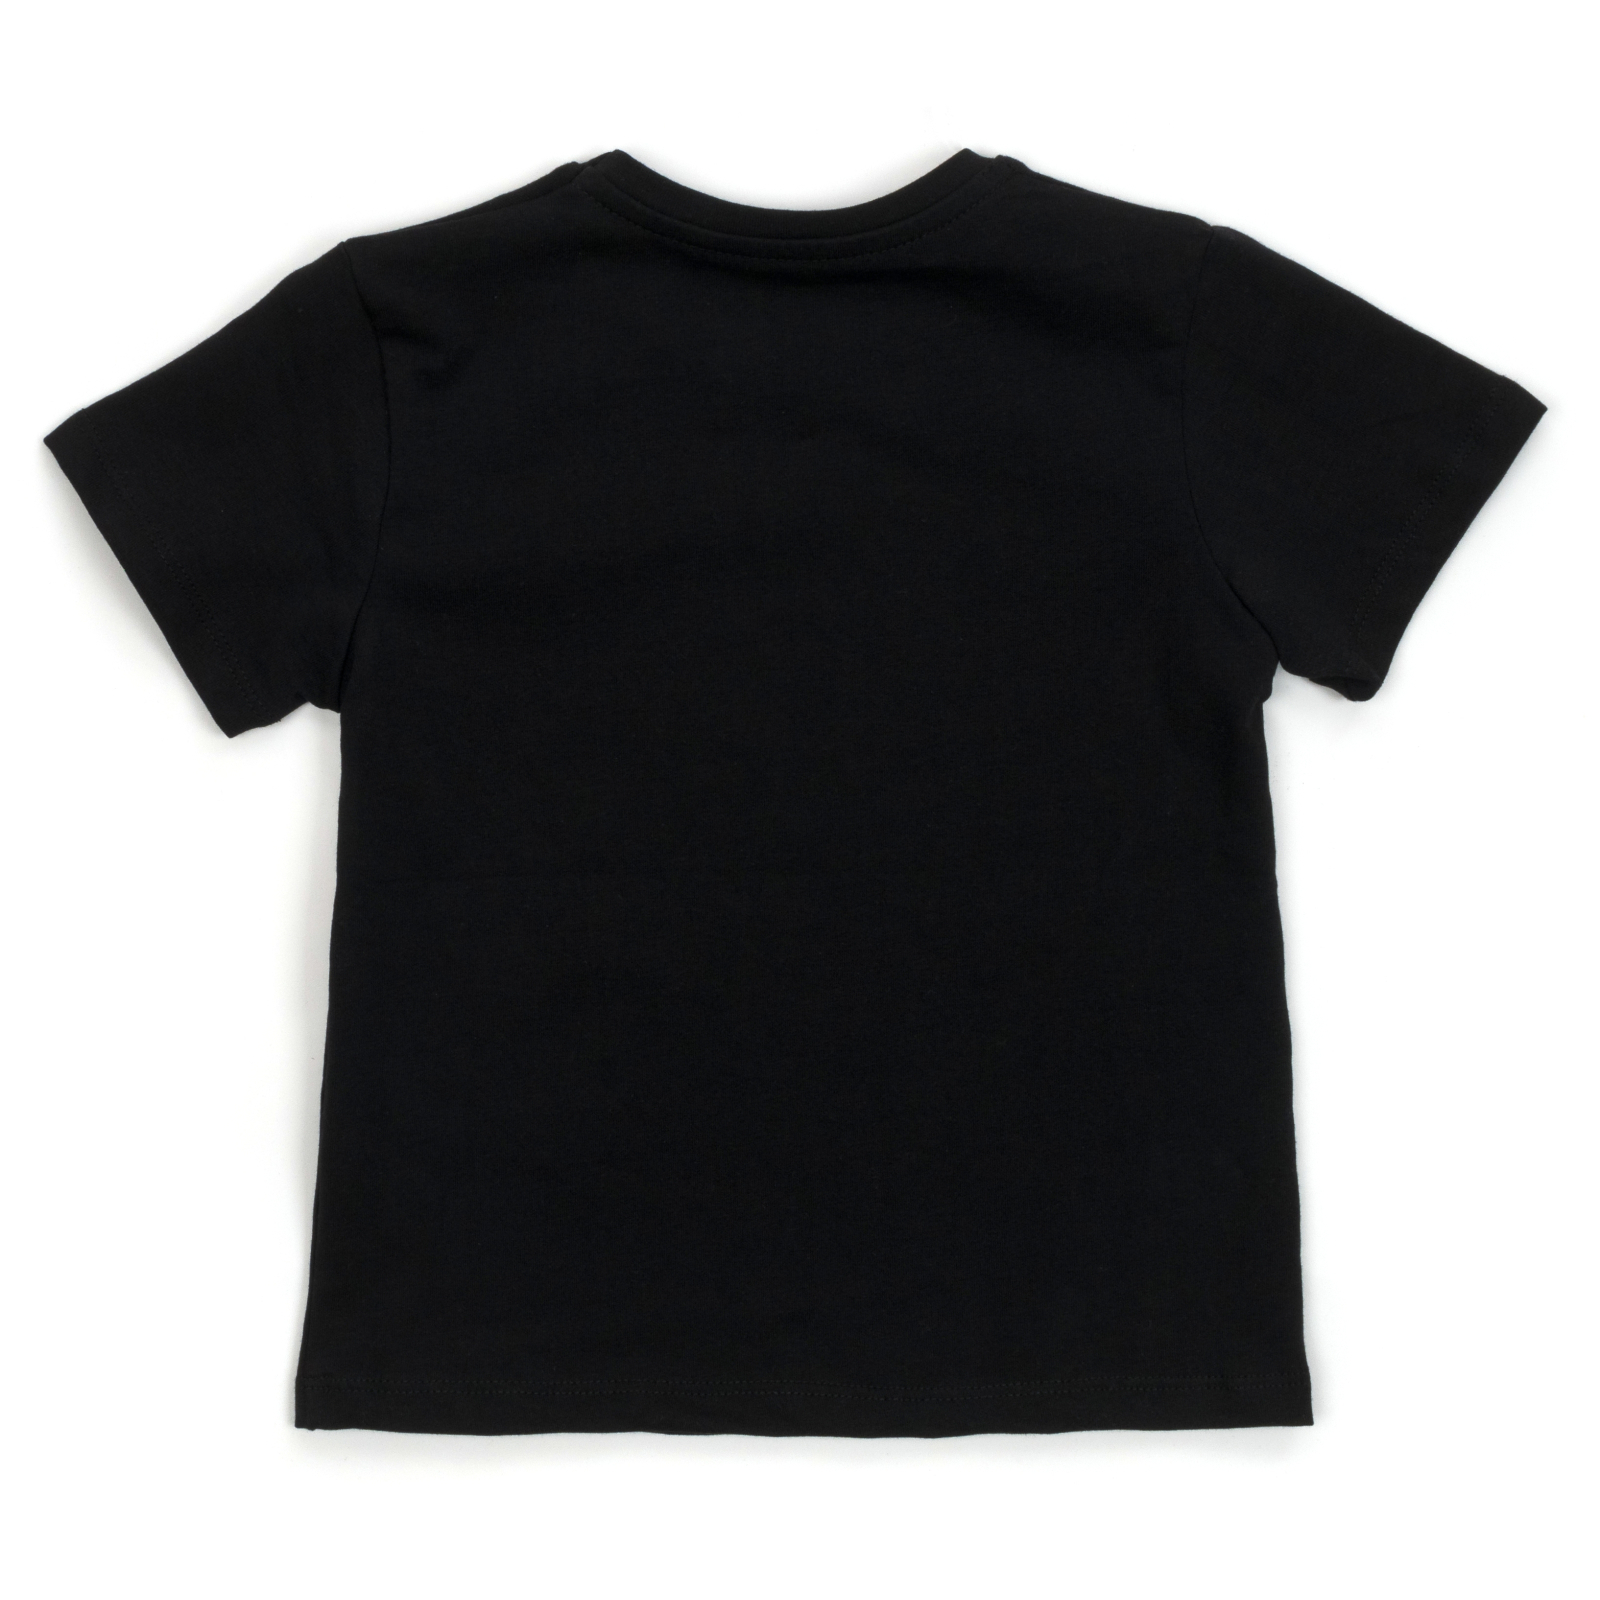 Набор детской одежды H.A футболка с бриджами (M-120-116B-black) изображение 5